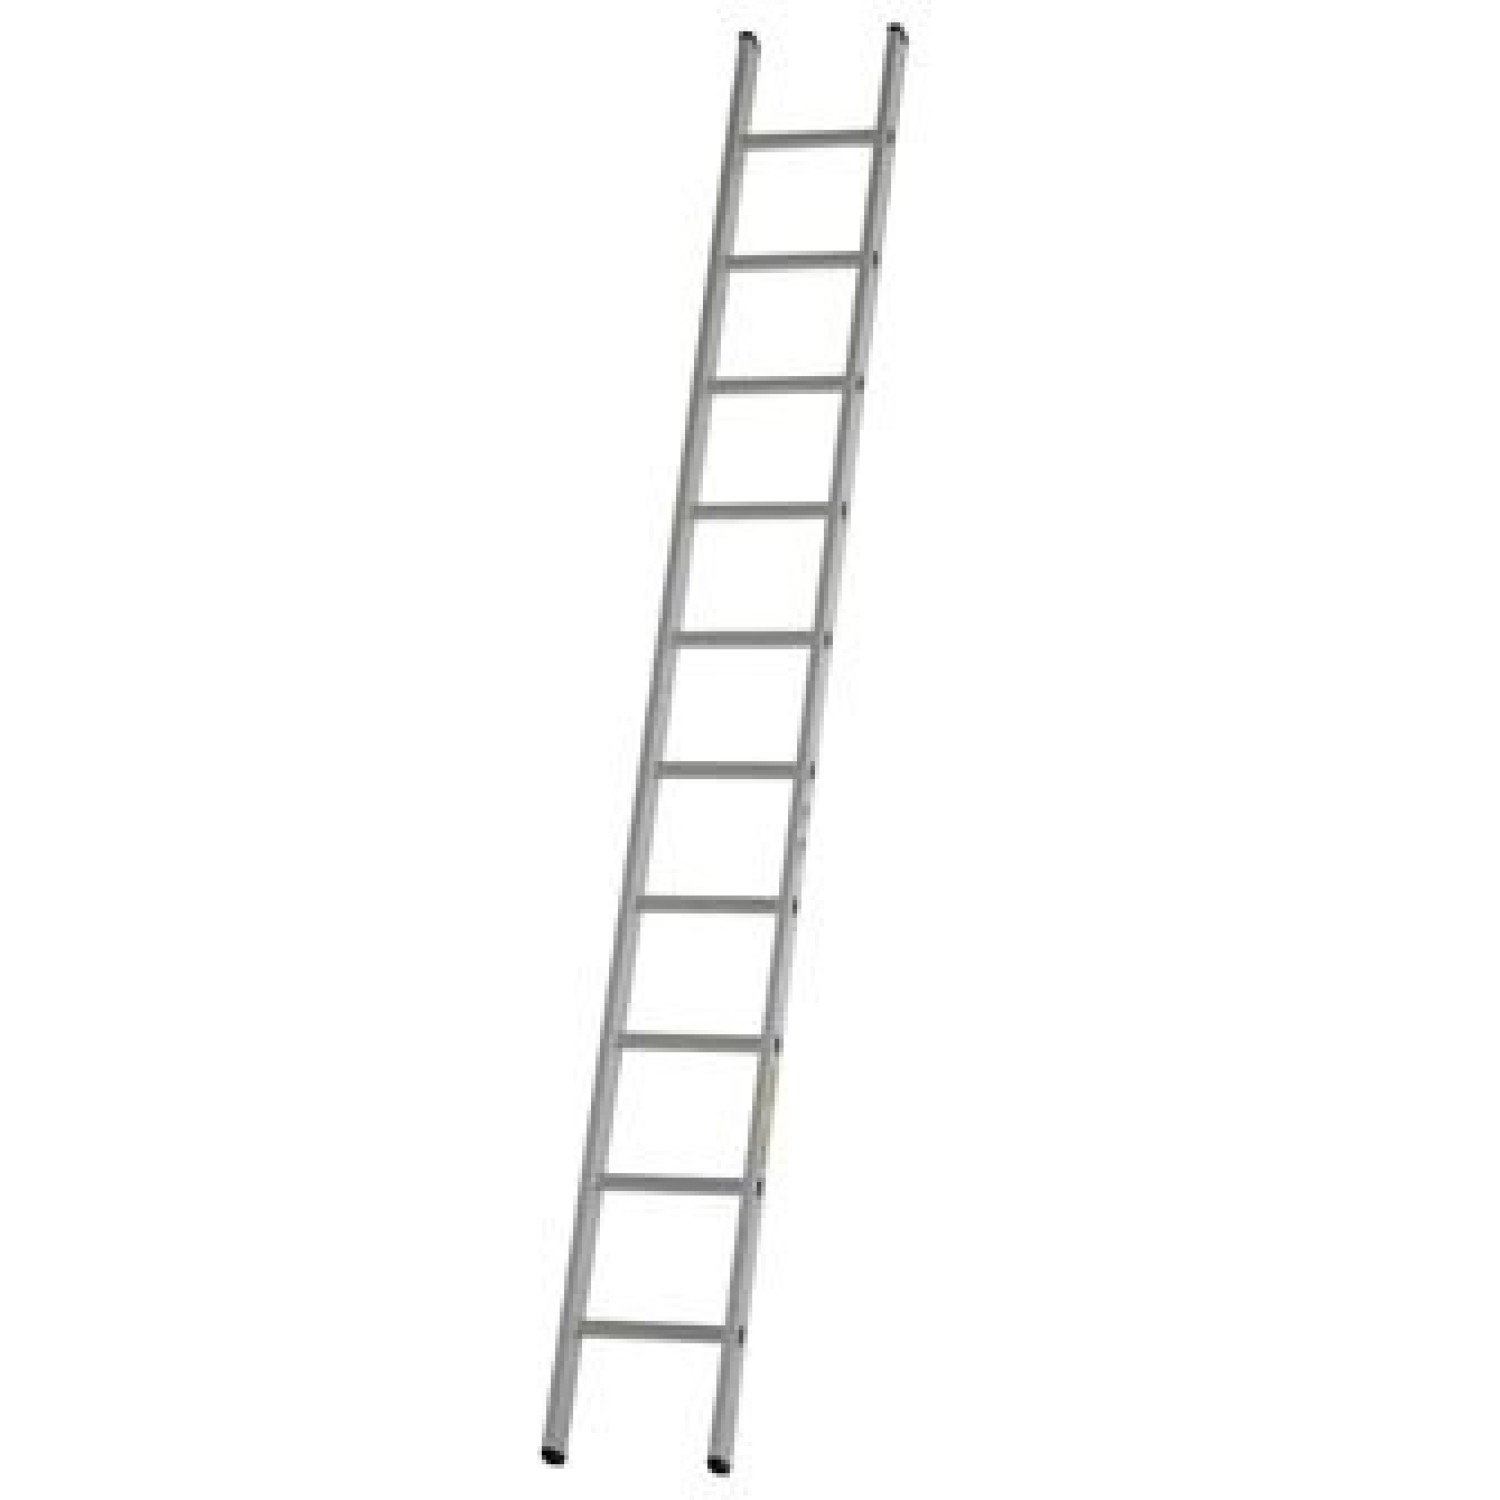 Dirks Enkele rechte ladder 2.45 meter gecoat